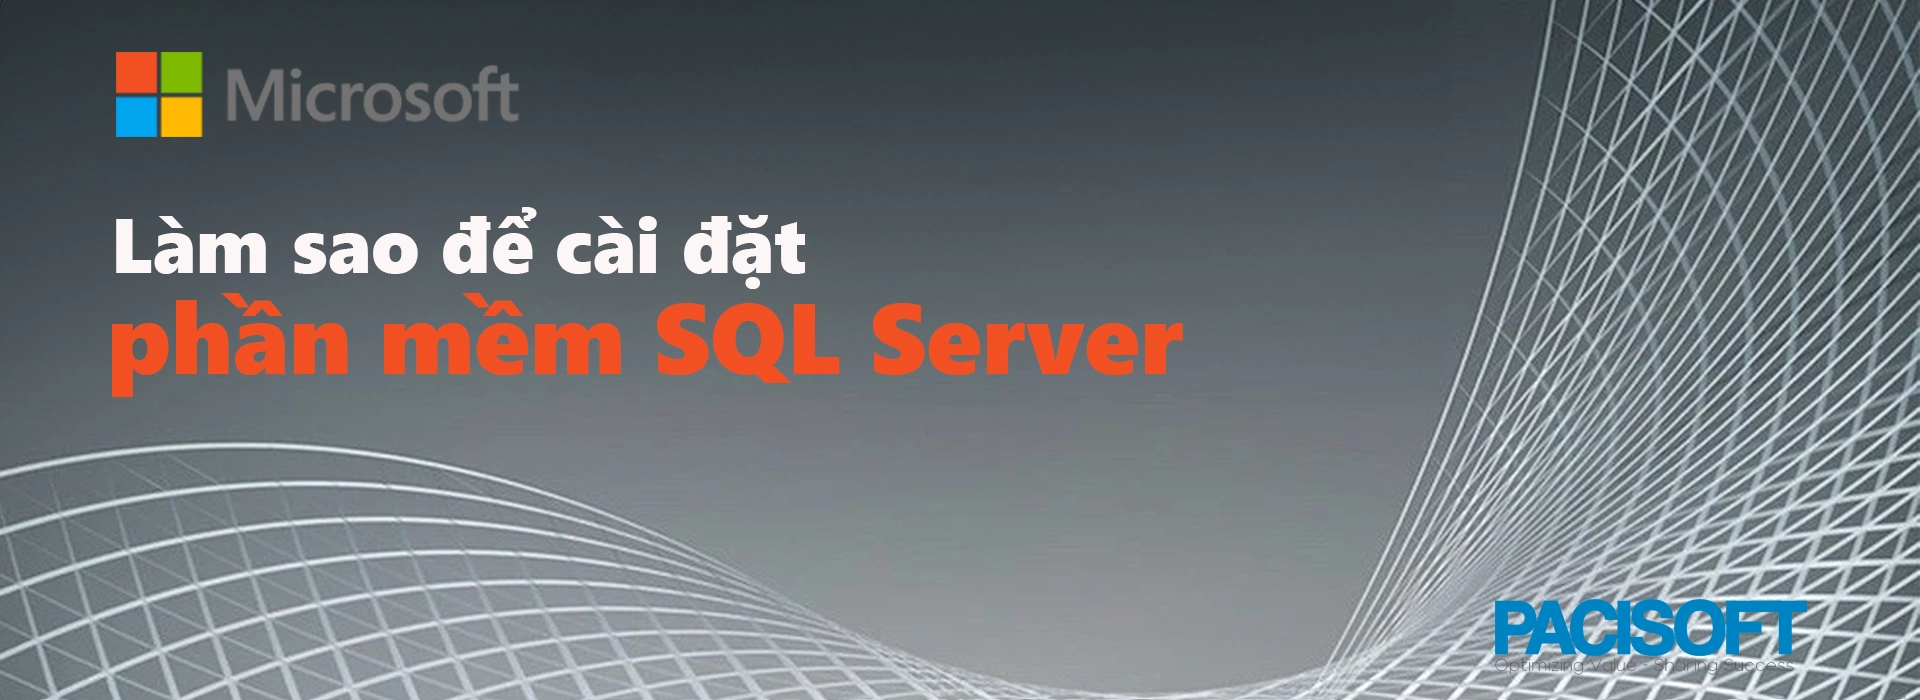 Hướng dẫn tải xuống và cài đặt phần mềm SQL Server chi tiết